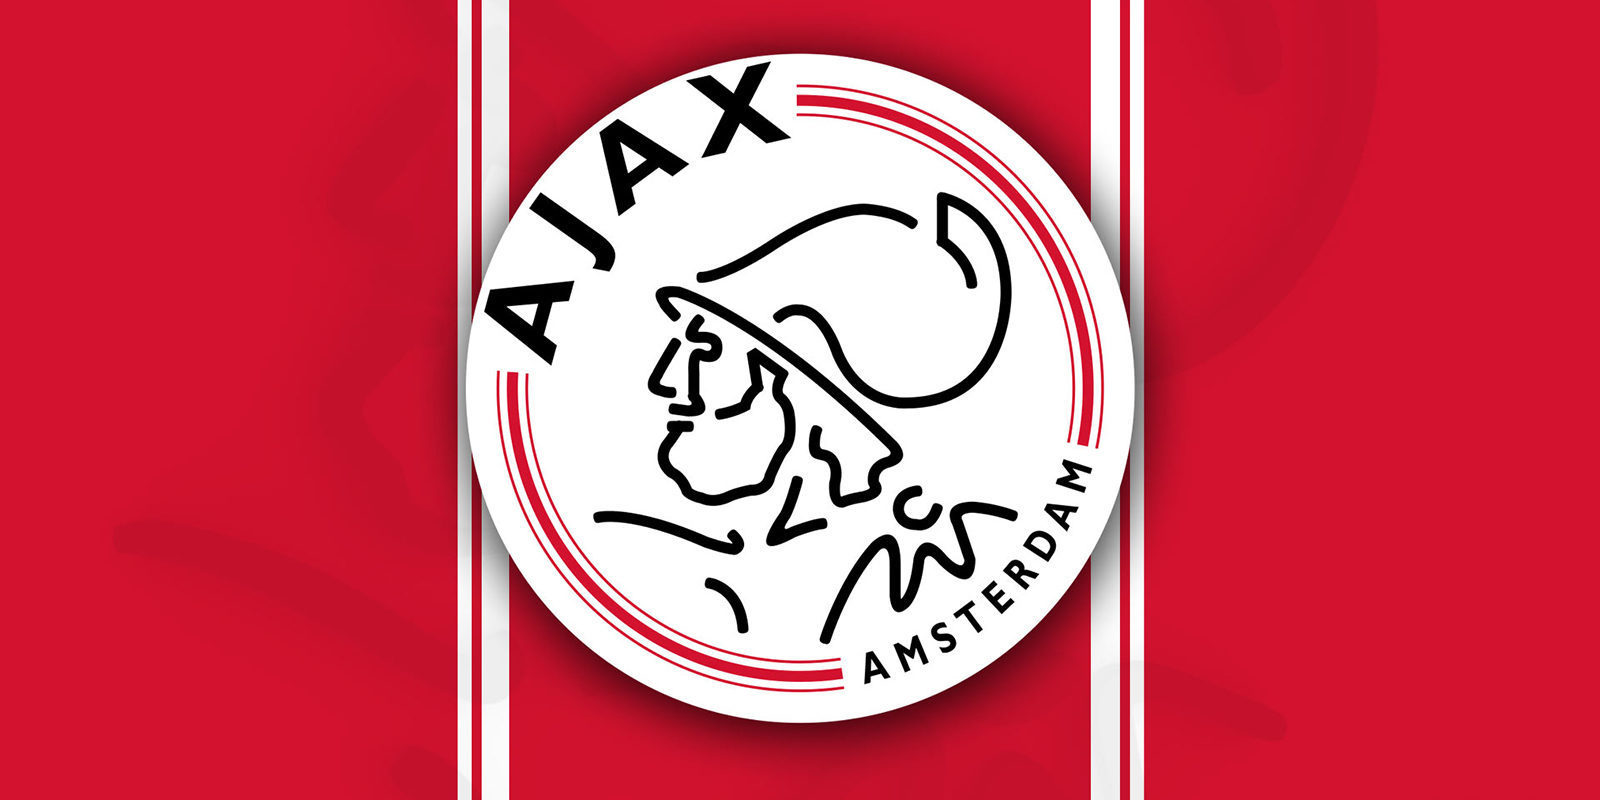 El Ajax de Amsterdam apuesta por los eSports